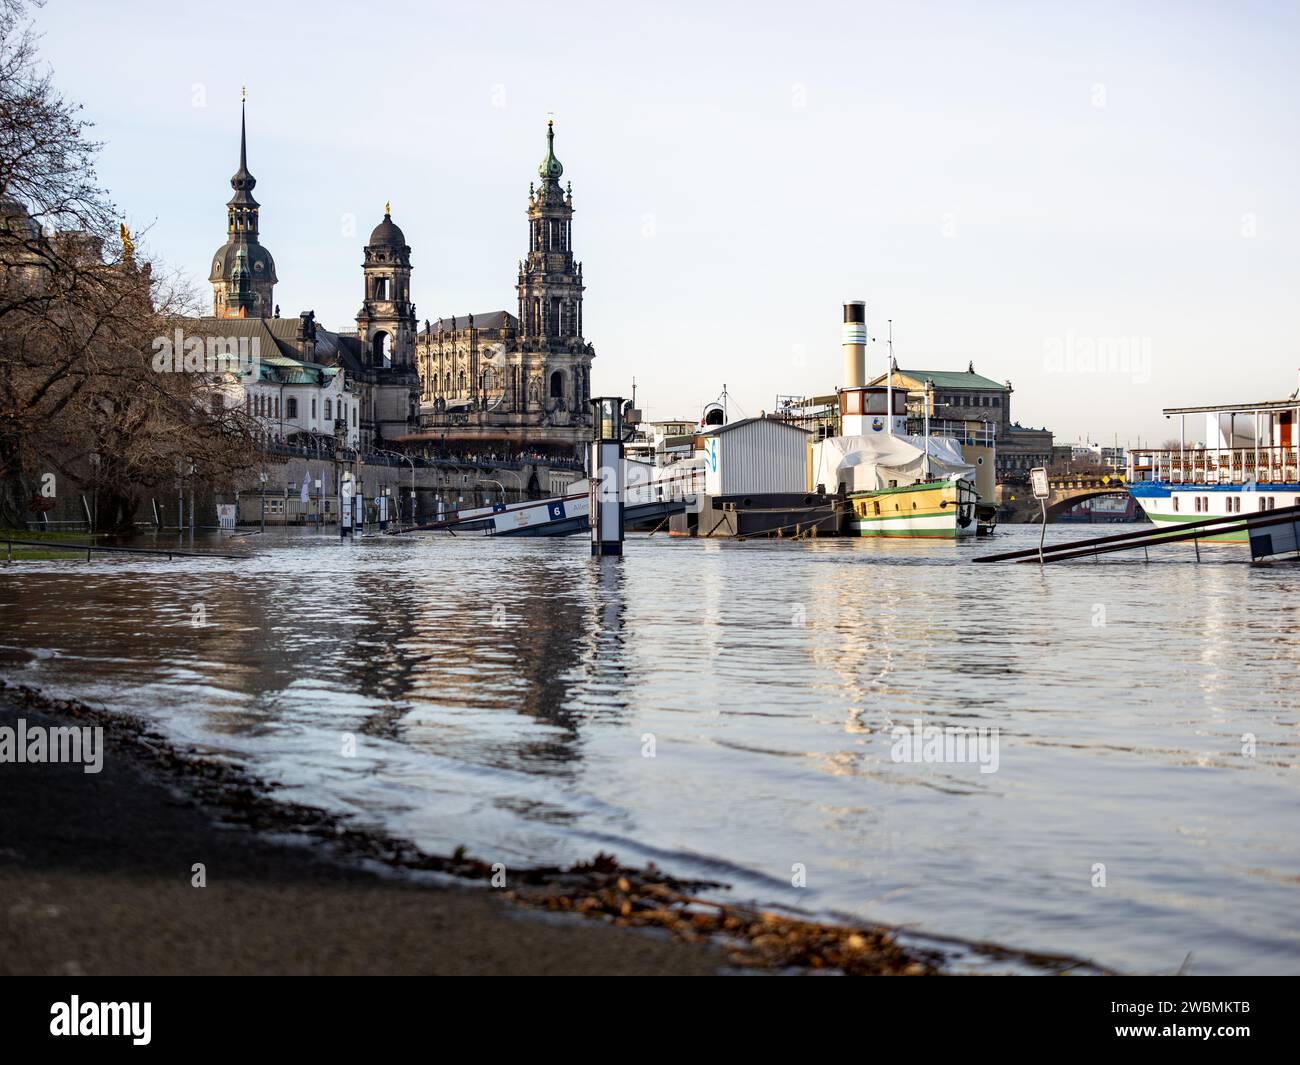 Inondation de la rivière Elbe dans la vieille ville de Dresde. La rue Terrassenufer est fermée en raison de débordement d'eau. Les bateaux à vapeur flottent sur l'eau. Banque D'Images